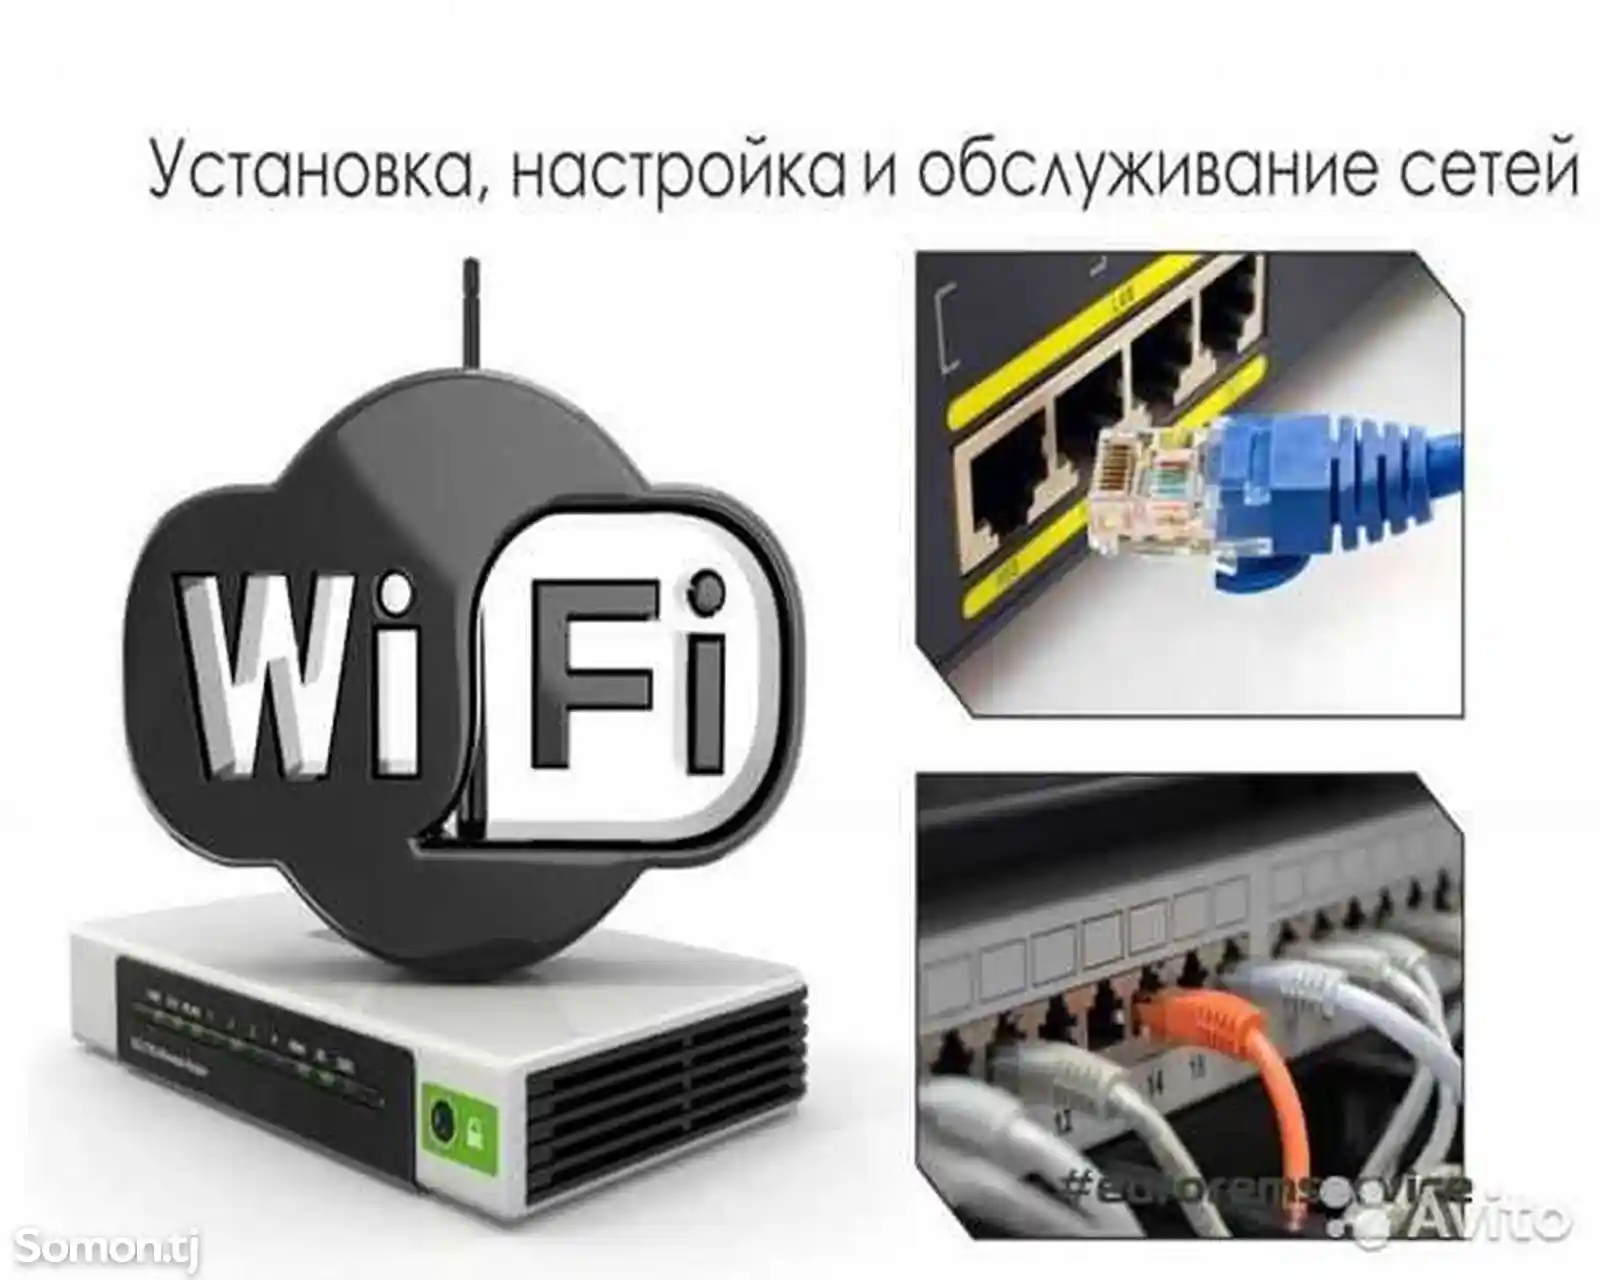 Услуги по установке интернета и ТВ проводки-6